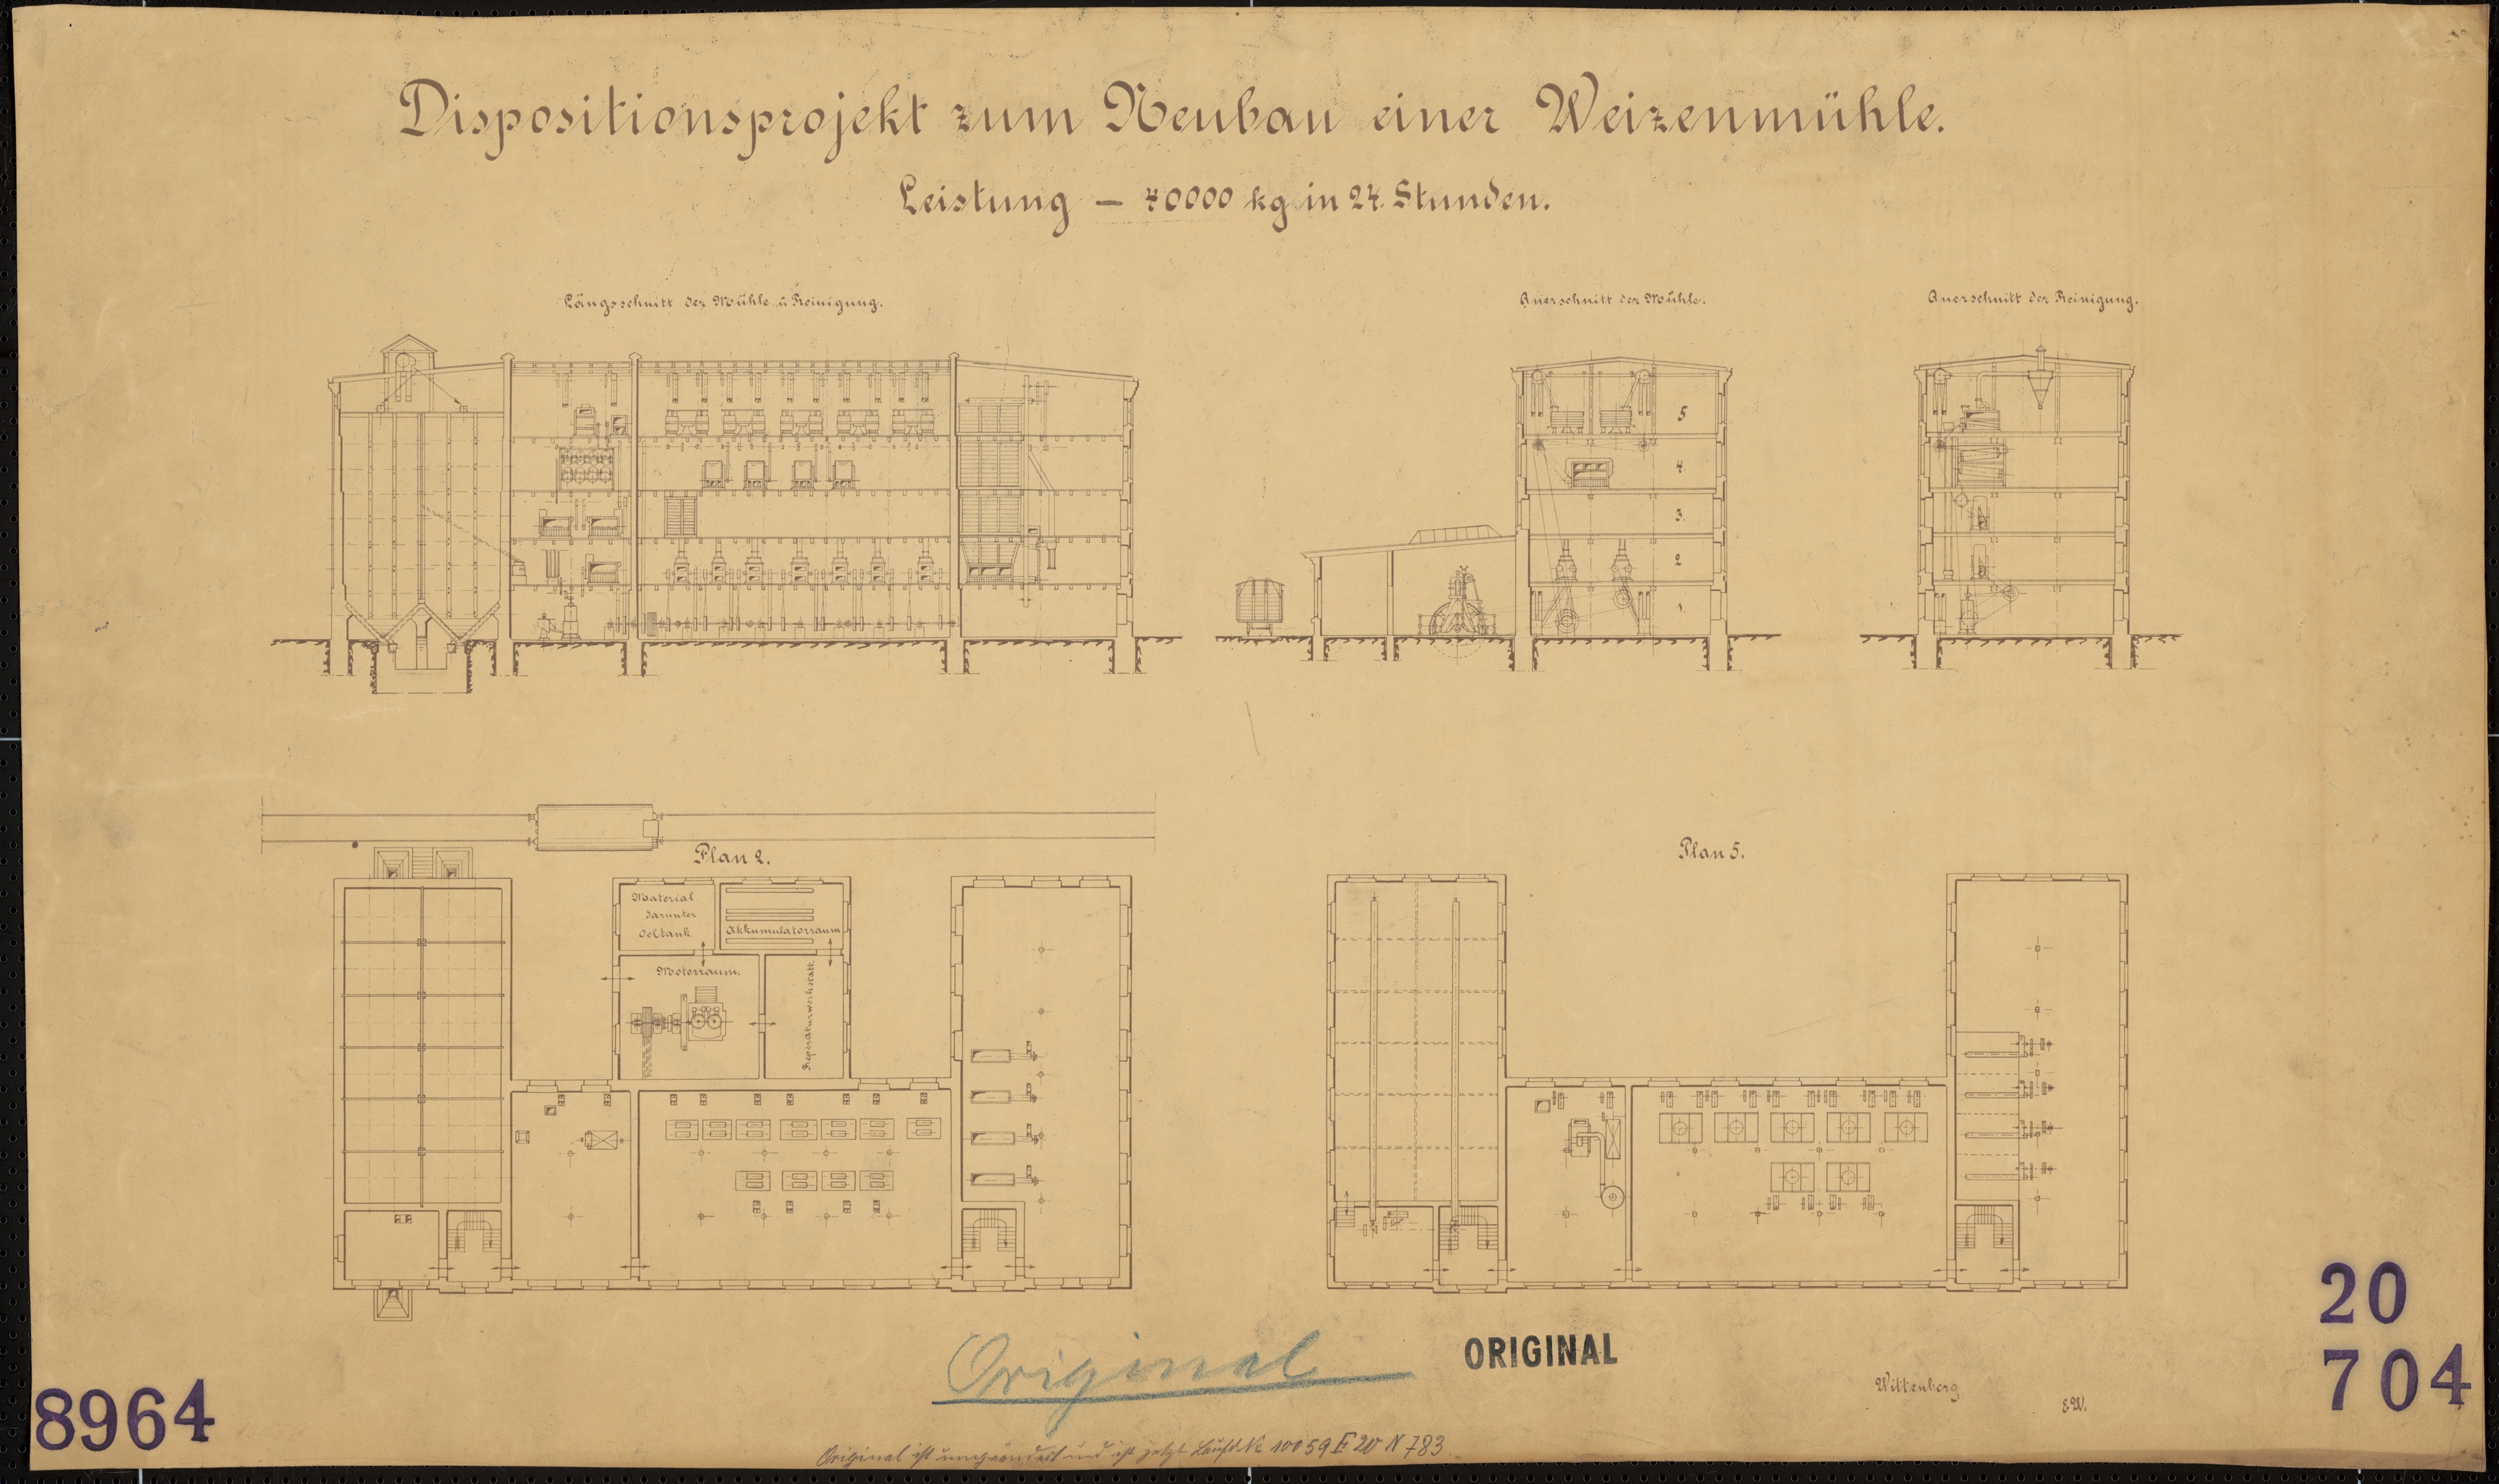 Technische Zeichnung : Dispositionsprojekt zum Neubau einer Weizenmühle. Leistung - 40000 kg in 24 Stunden (Stiftung Deutsches Technikmuseum Berlin CC BY-SA)